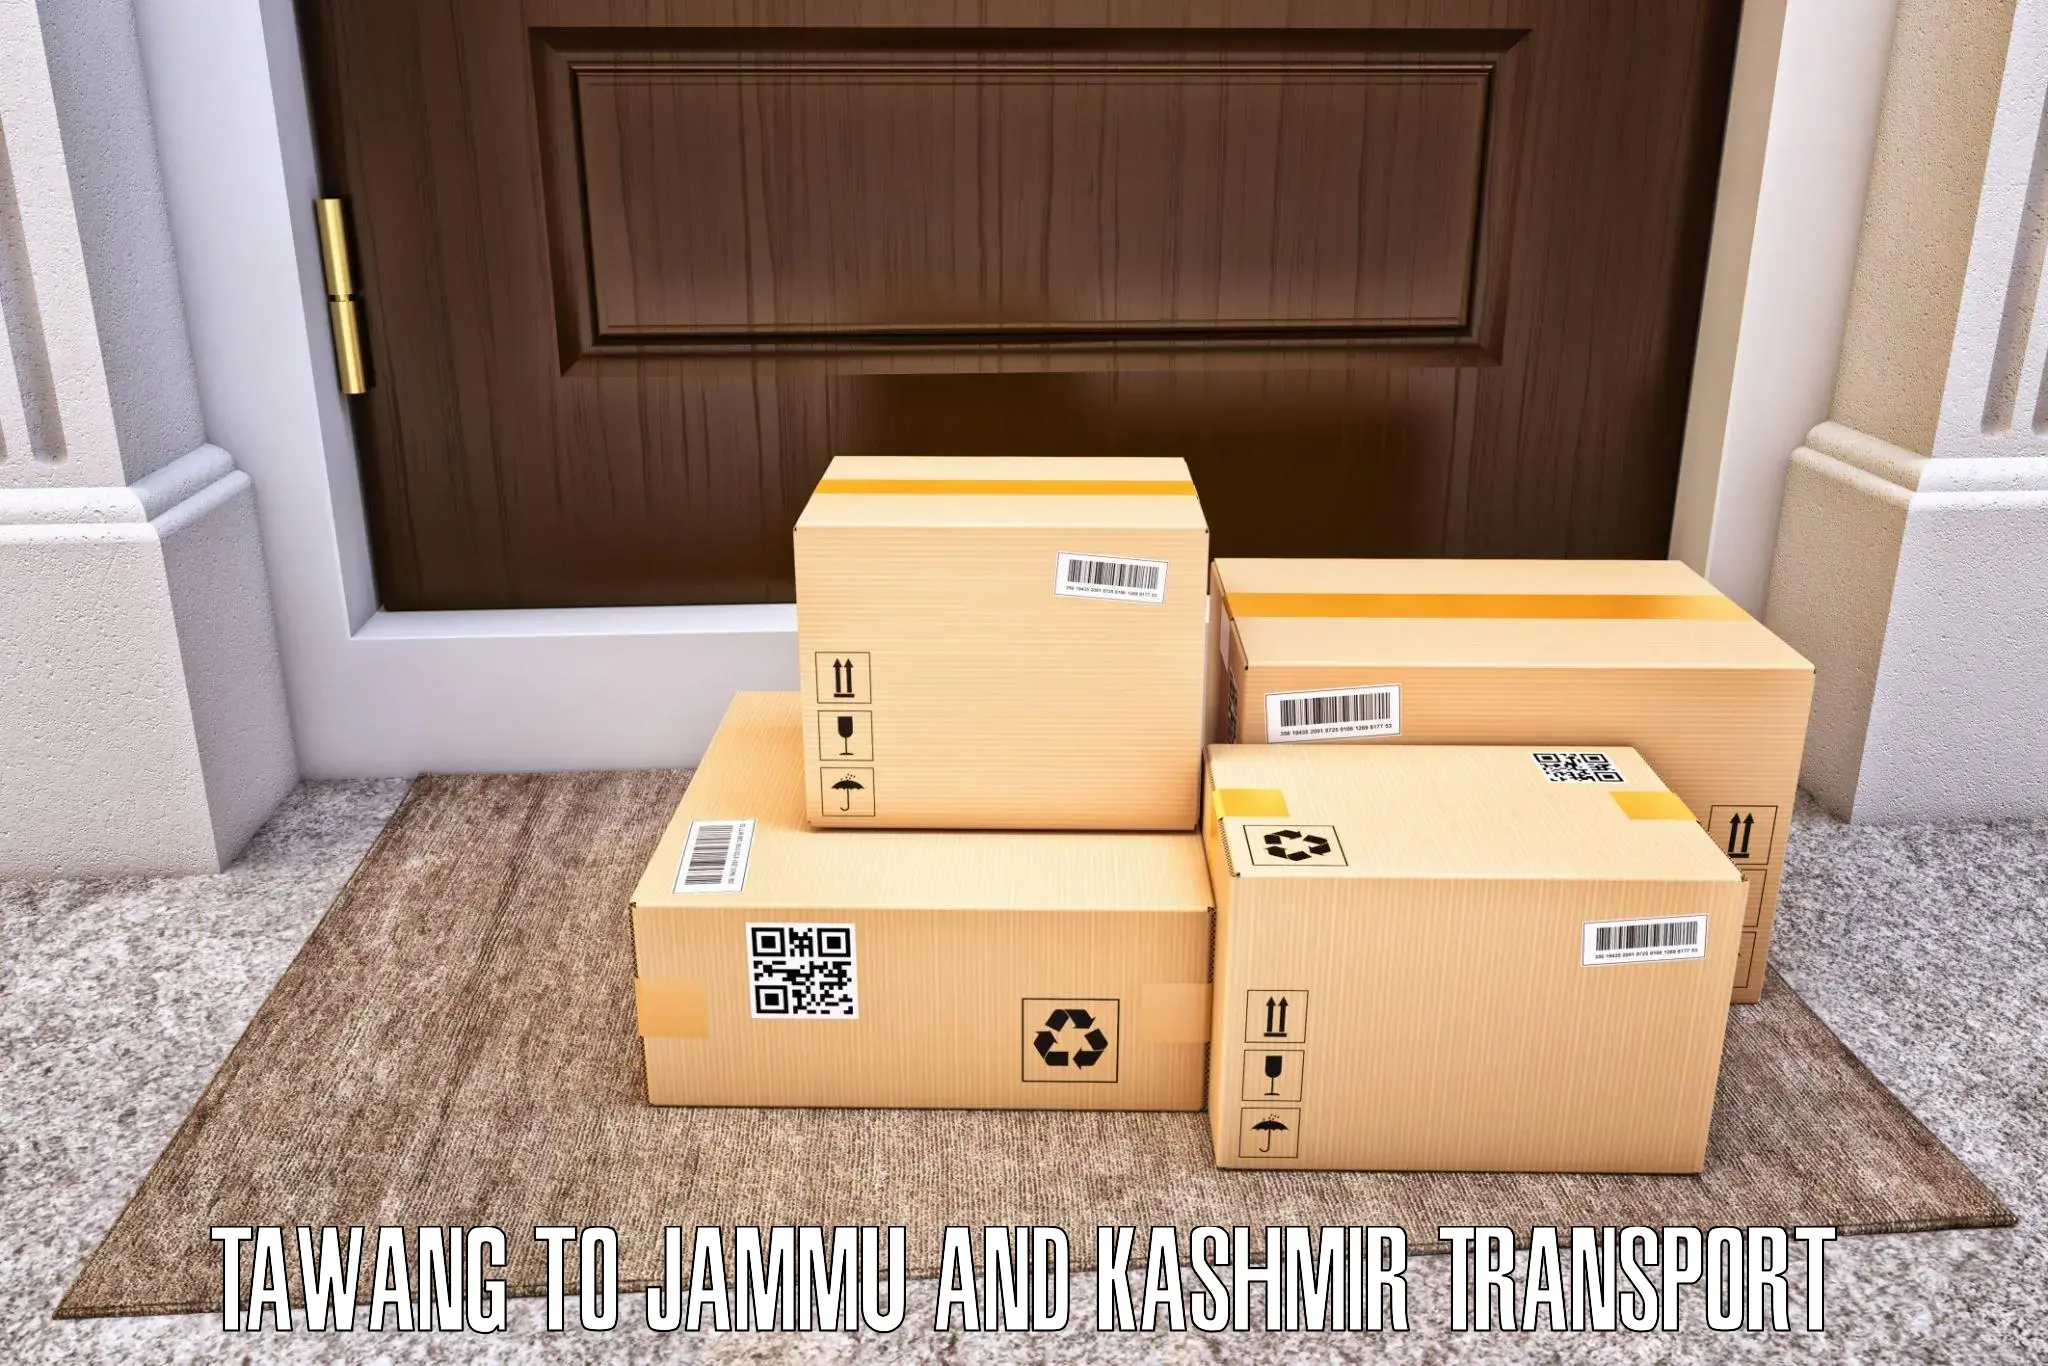 Transport services Tawang to Jammu and Kashmir